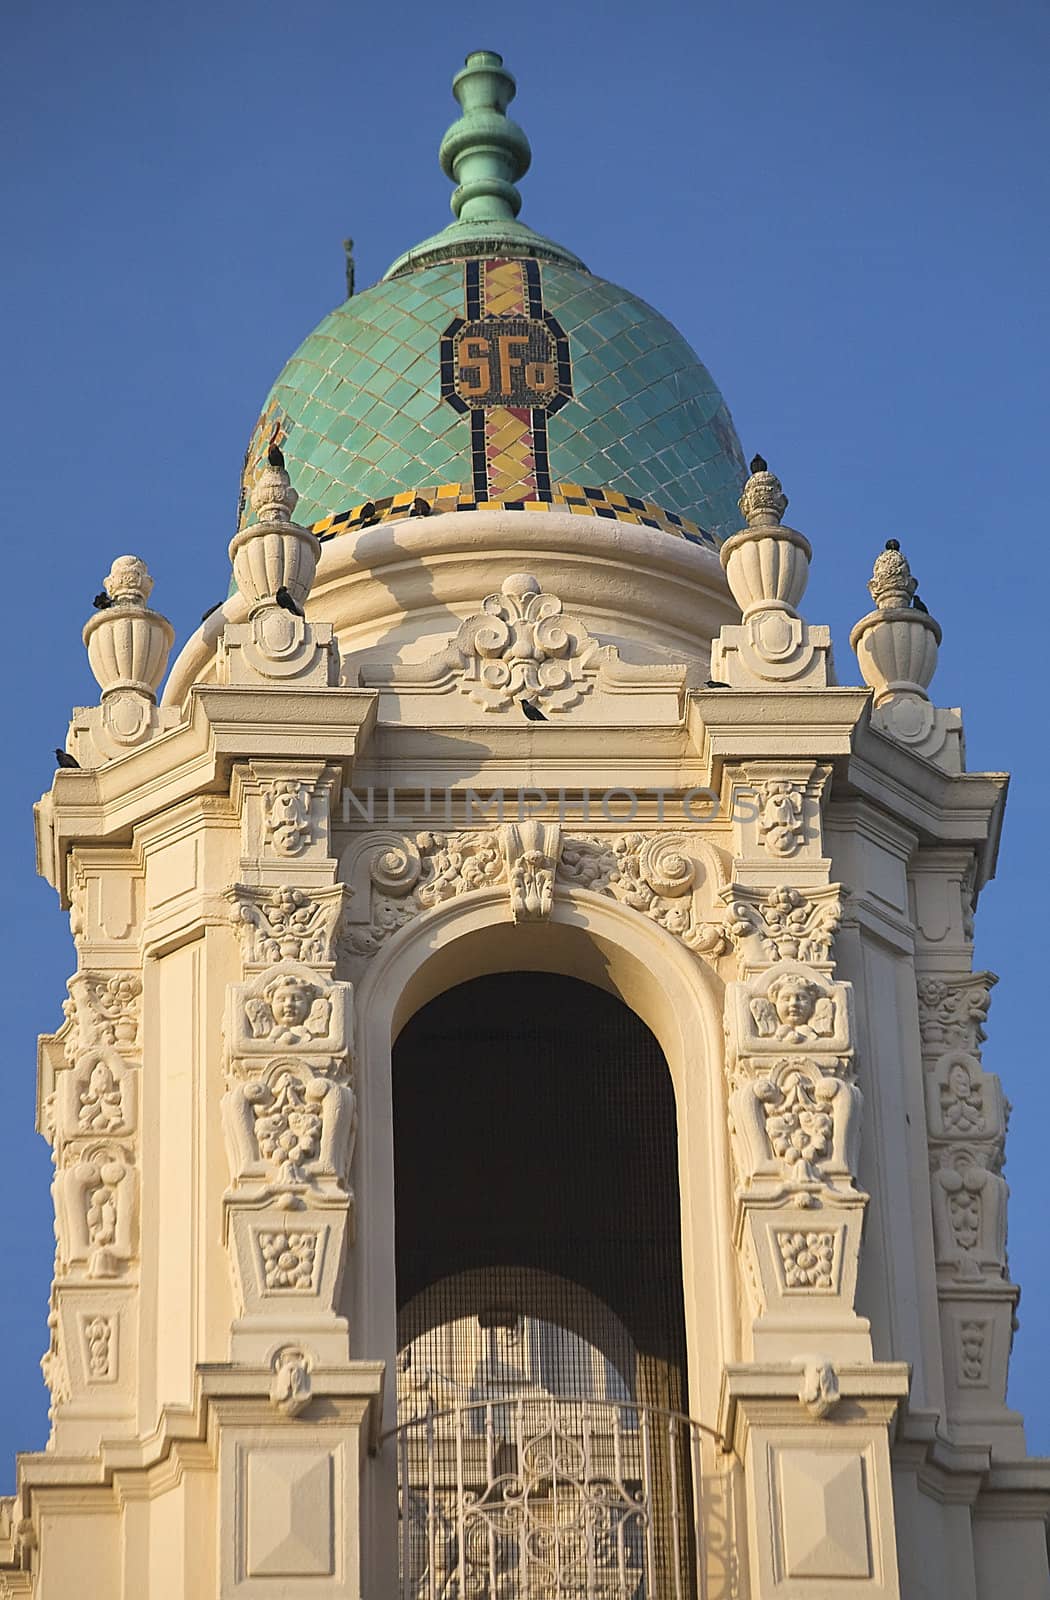 Ornate Steeple Mission Dolores Saint Francis De Assis Carvings San Francisco California